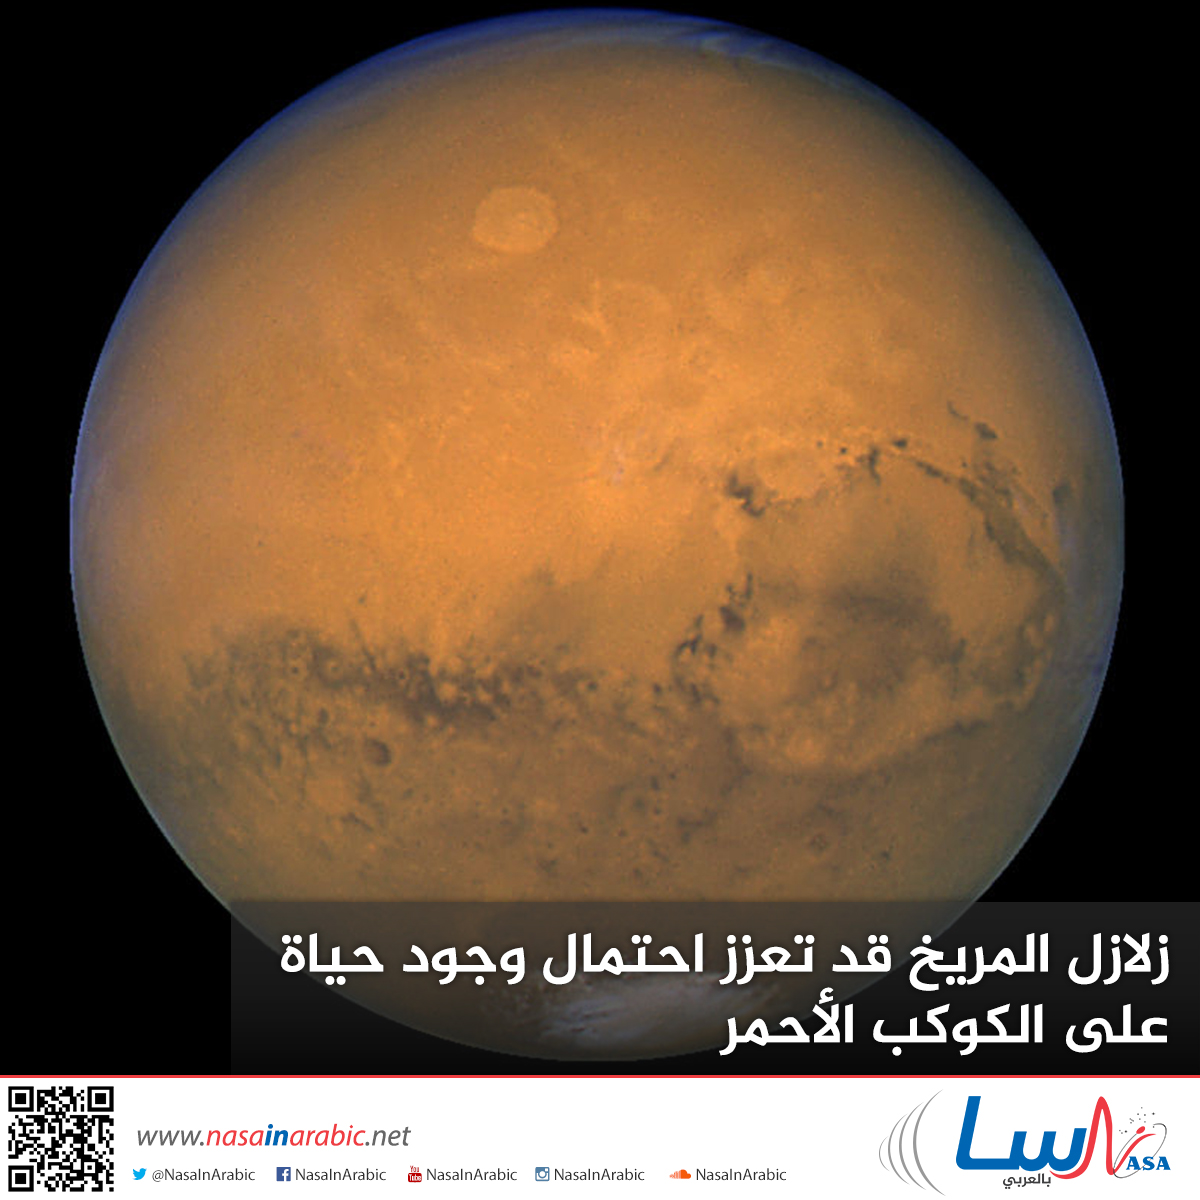 زلازل المريخ قد تعزز احتمال وجود حياة على الكوكب الأحمر